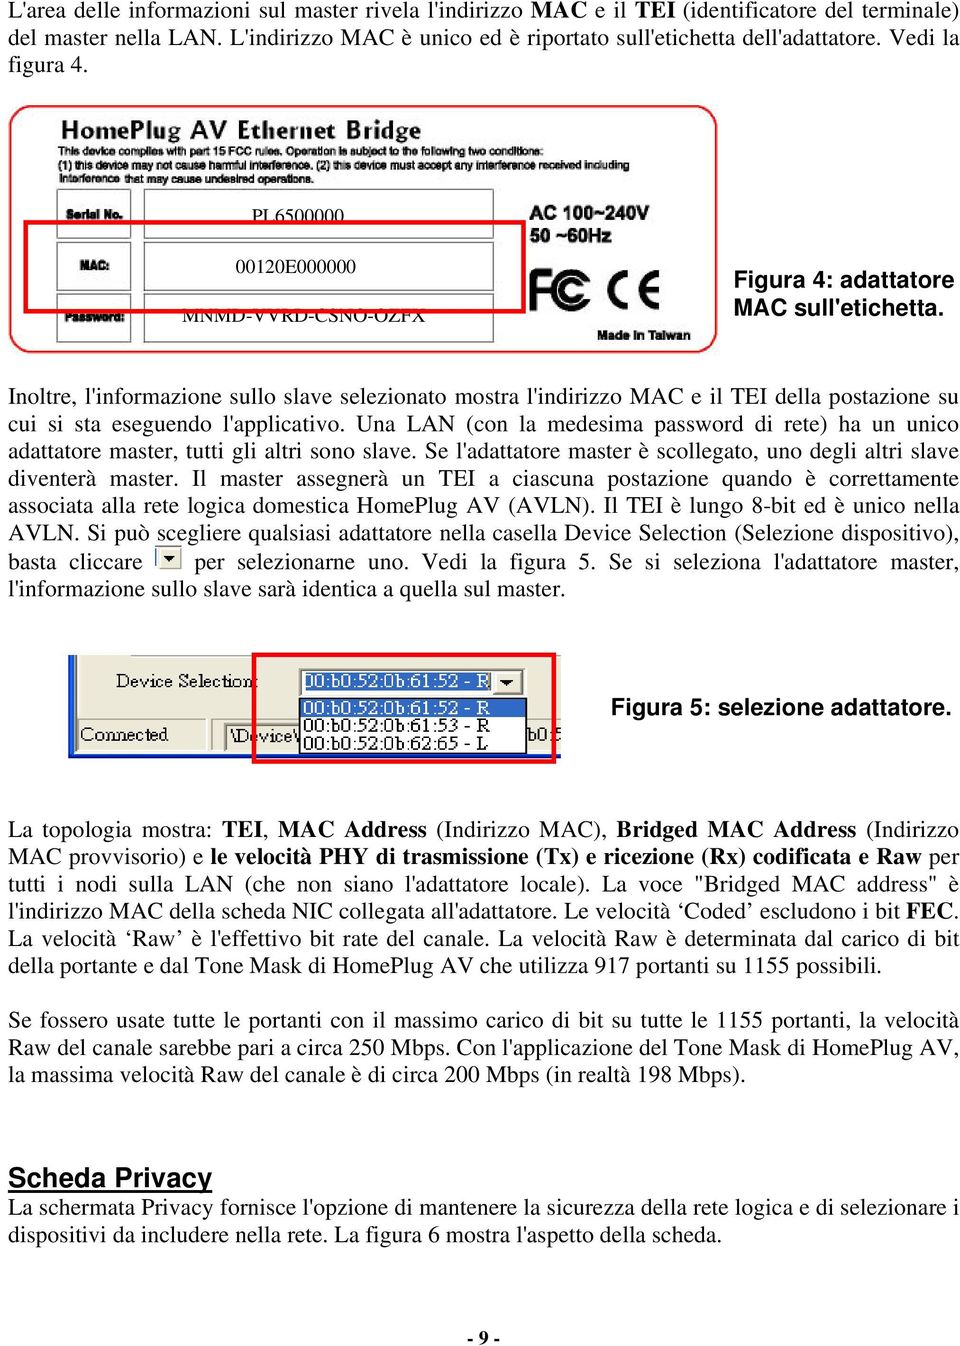 Inoltre, l'informazione sullo slave selezionato mostra l'indirizzo MAC e il TEI della postazione su cui si sta eseguendo l'applicativo.